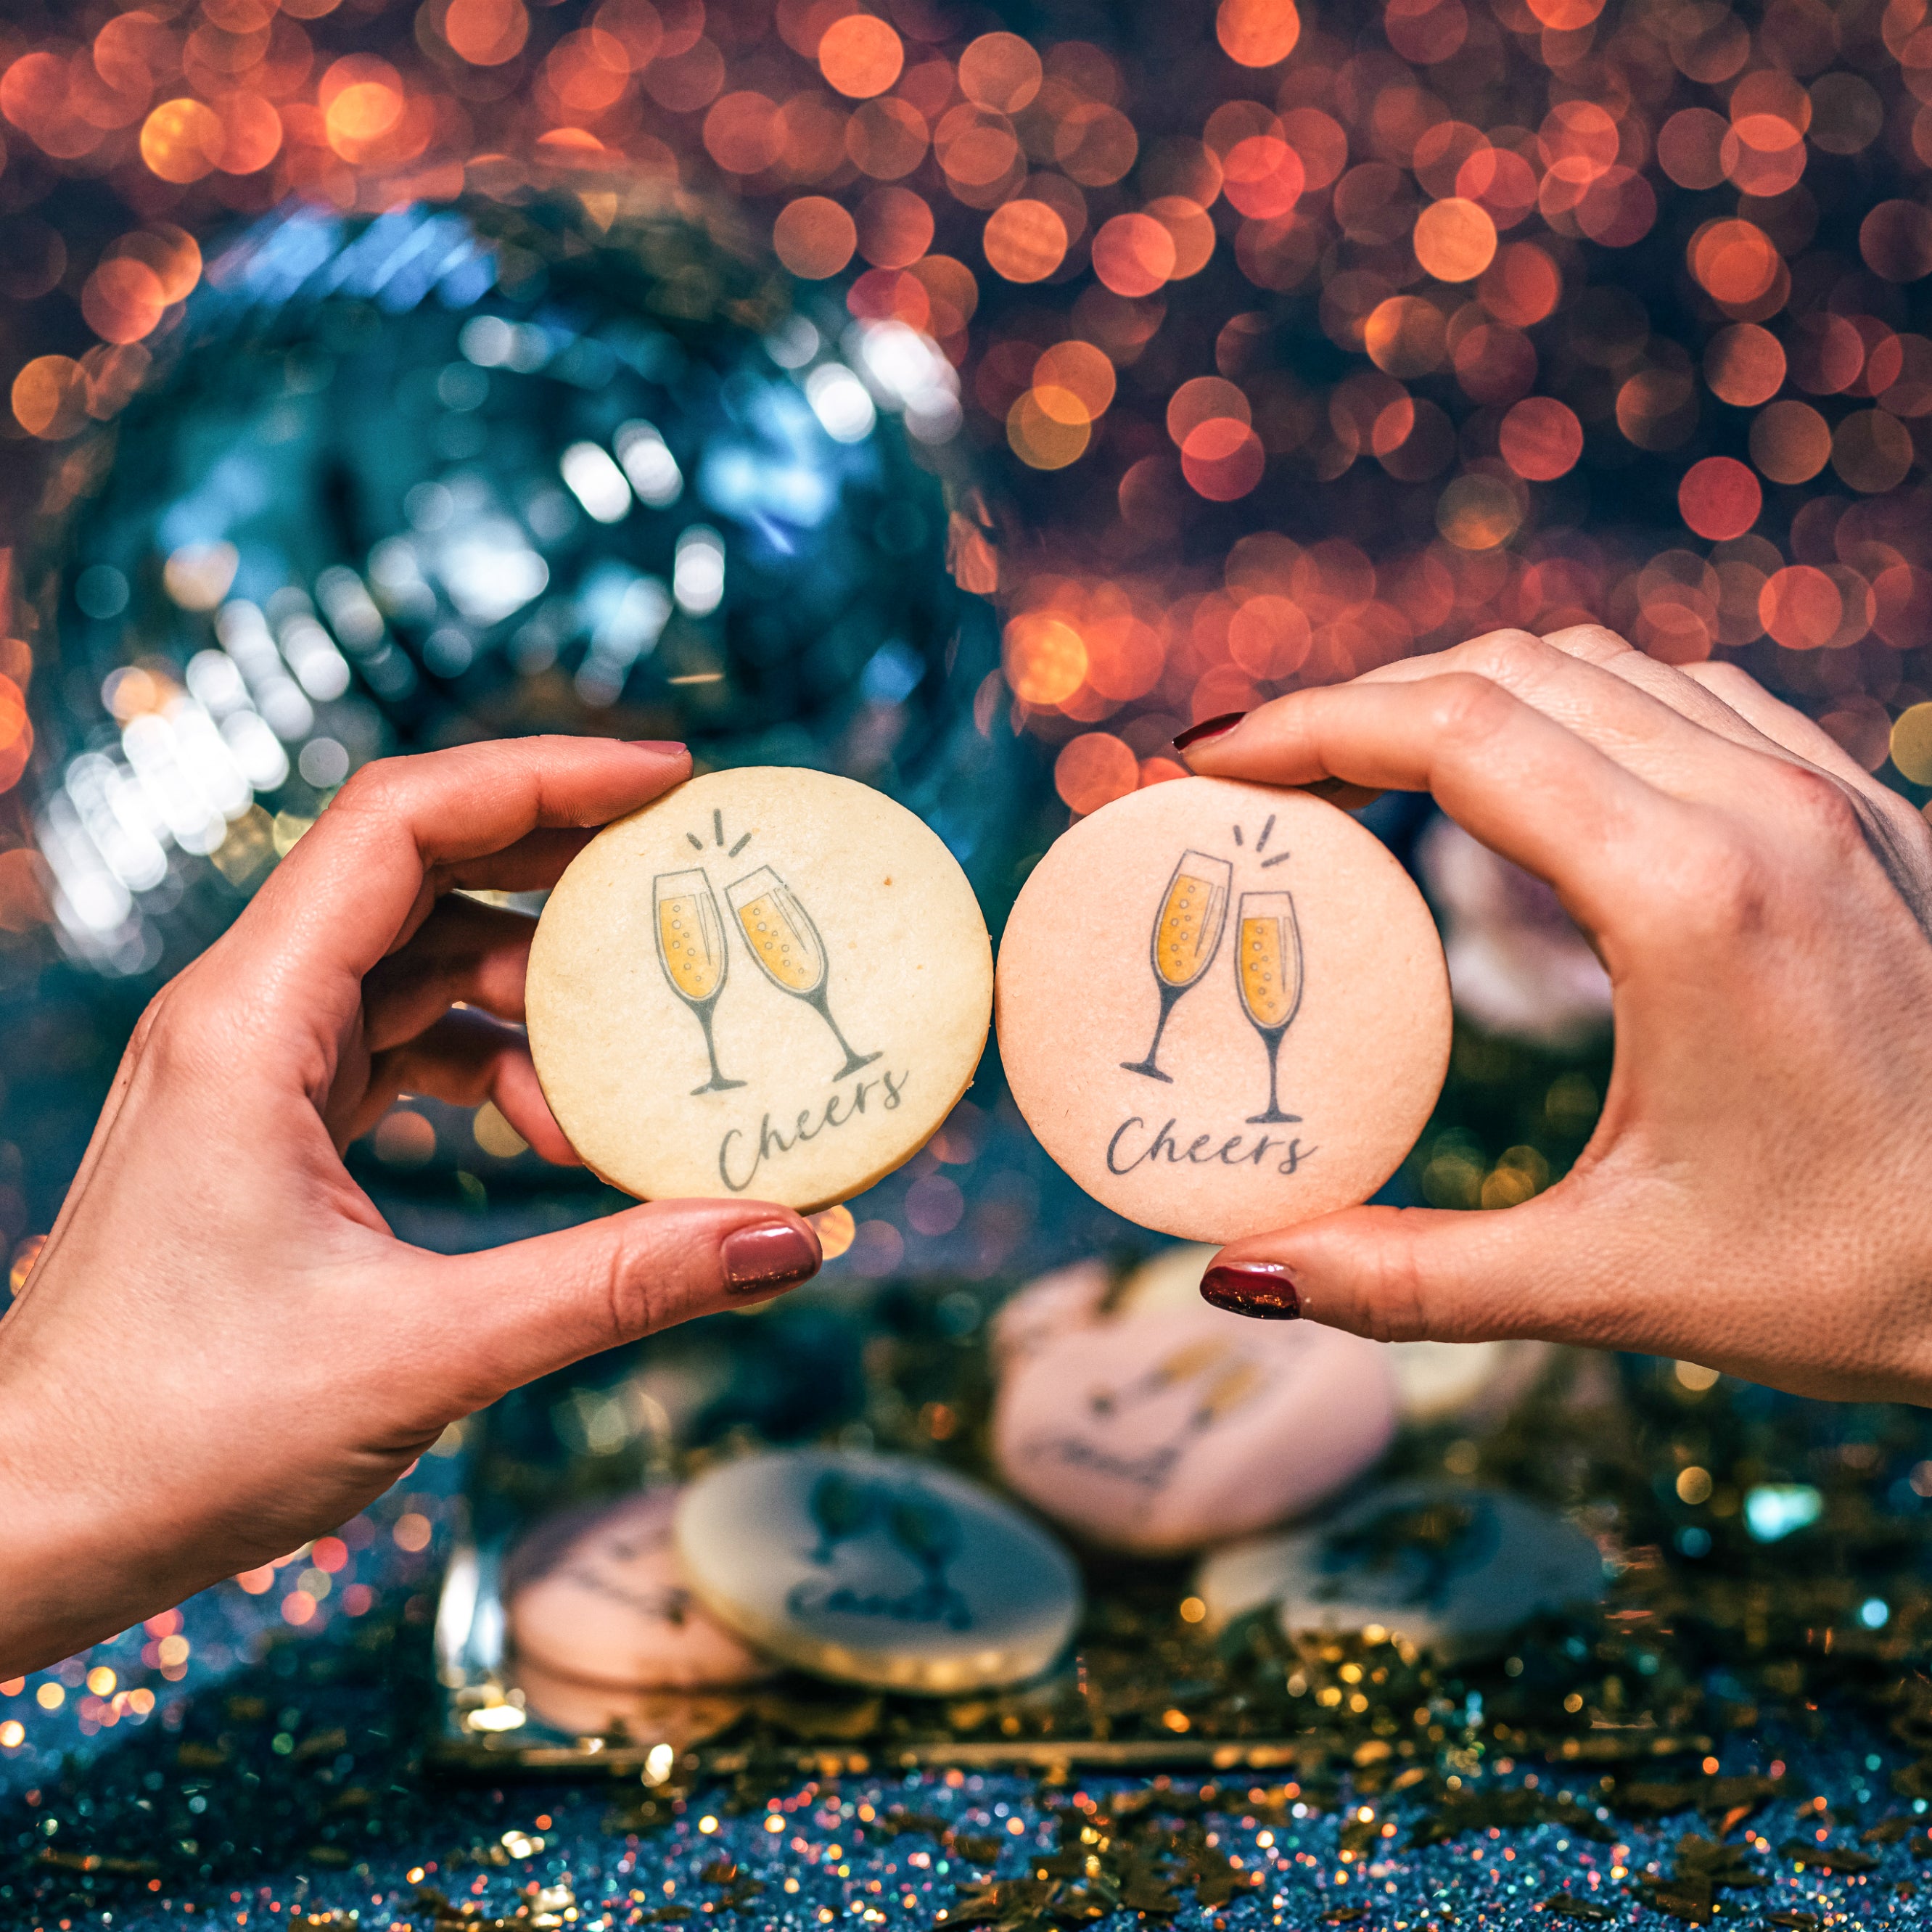 Biscotti personalizzati a tema anniversario festa party cin cin - Idee regalo